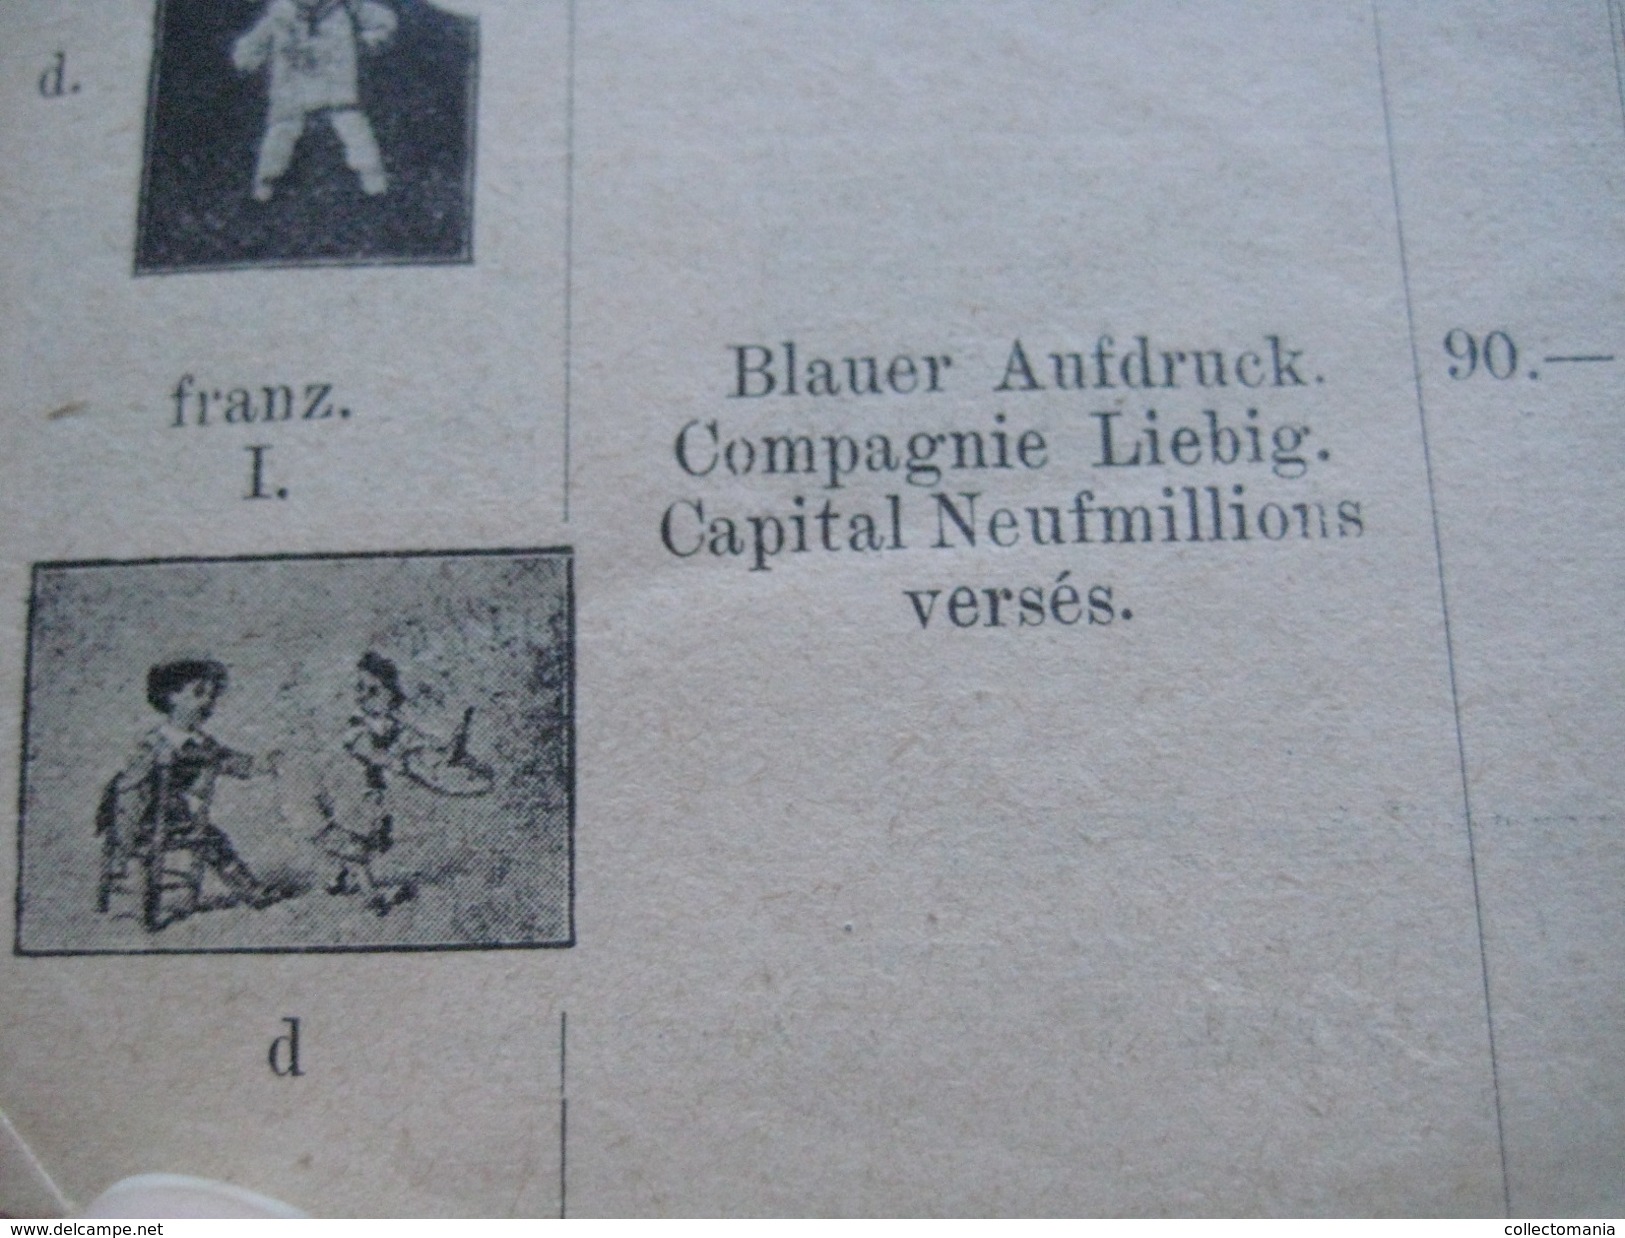 19 old catalogues price lists Compagnie Liebig - Katalogen - 1900 à 2000, DRESER 1902 1903, Tourteau, Sanguinetti